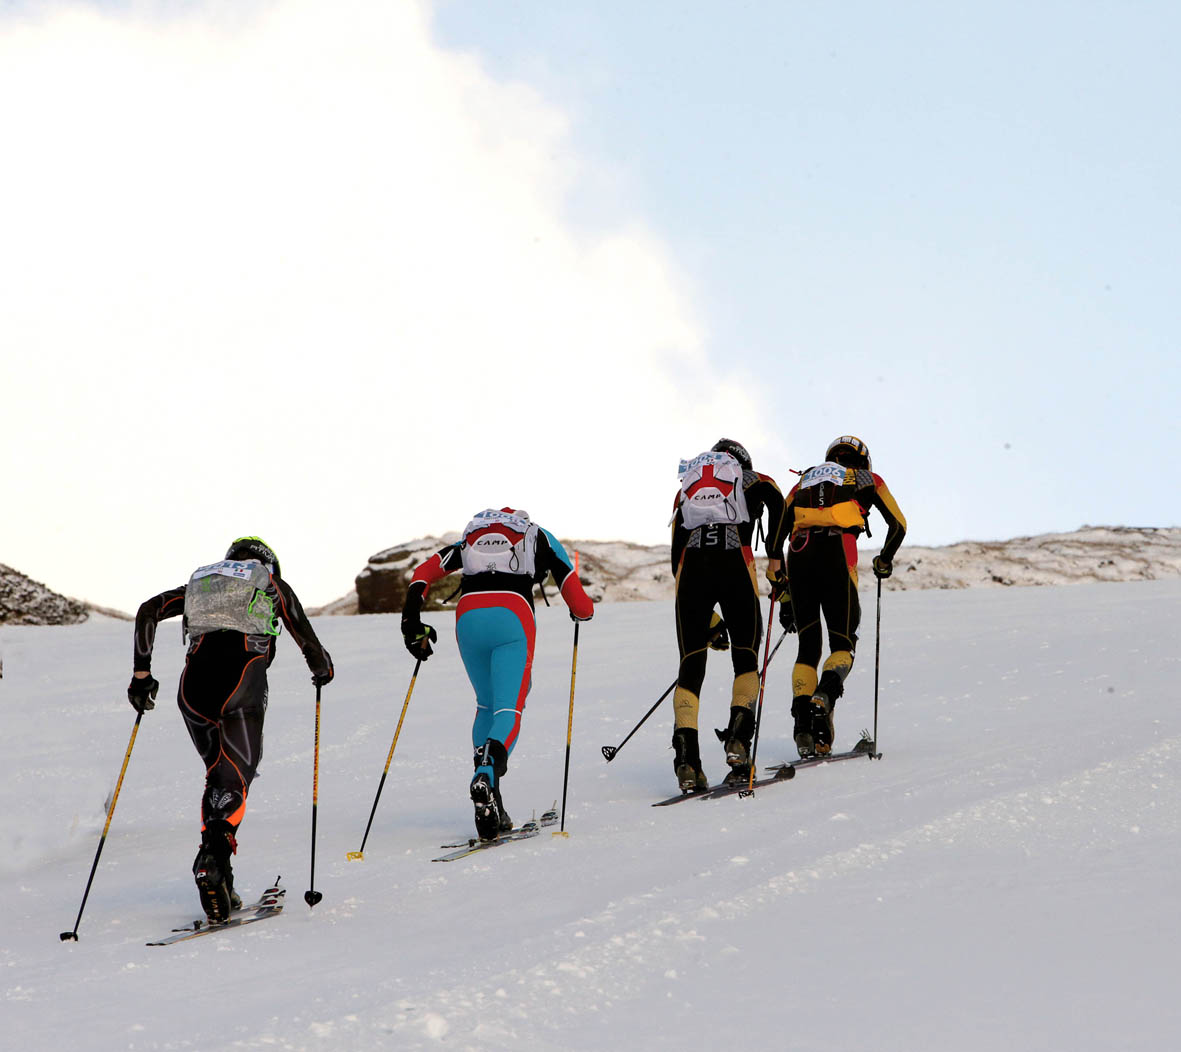 A DAVOS NEVE E SCI ALPINISMO ALLO ZENIT. EPIC SKI TOUR REGALO DI NATALE PERFETTO